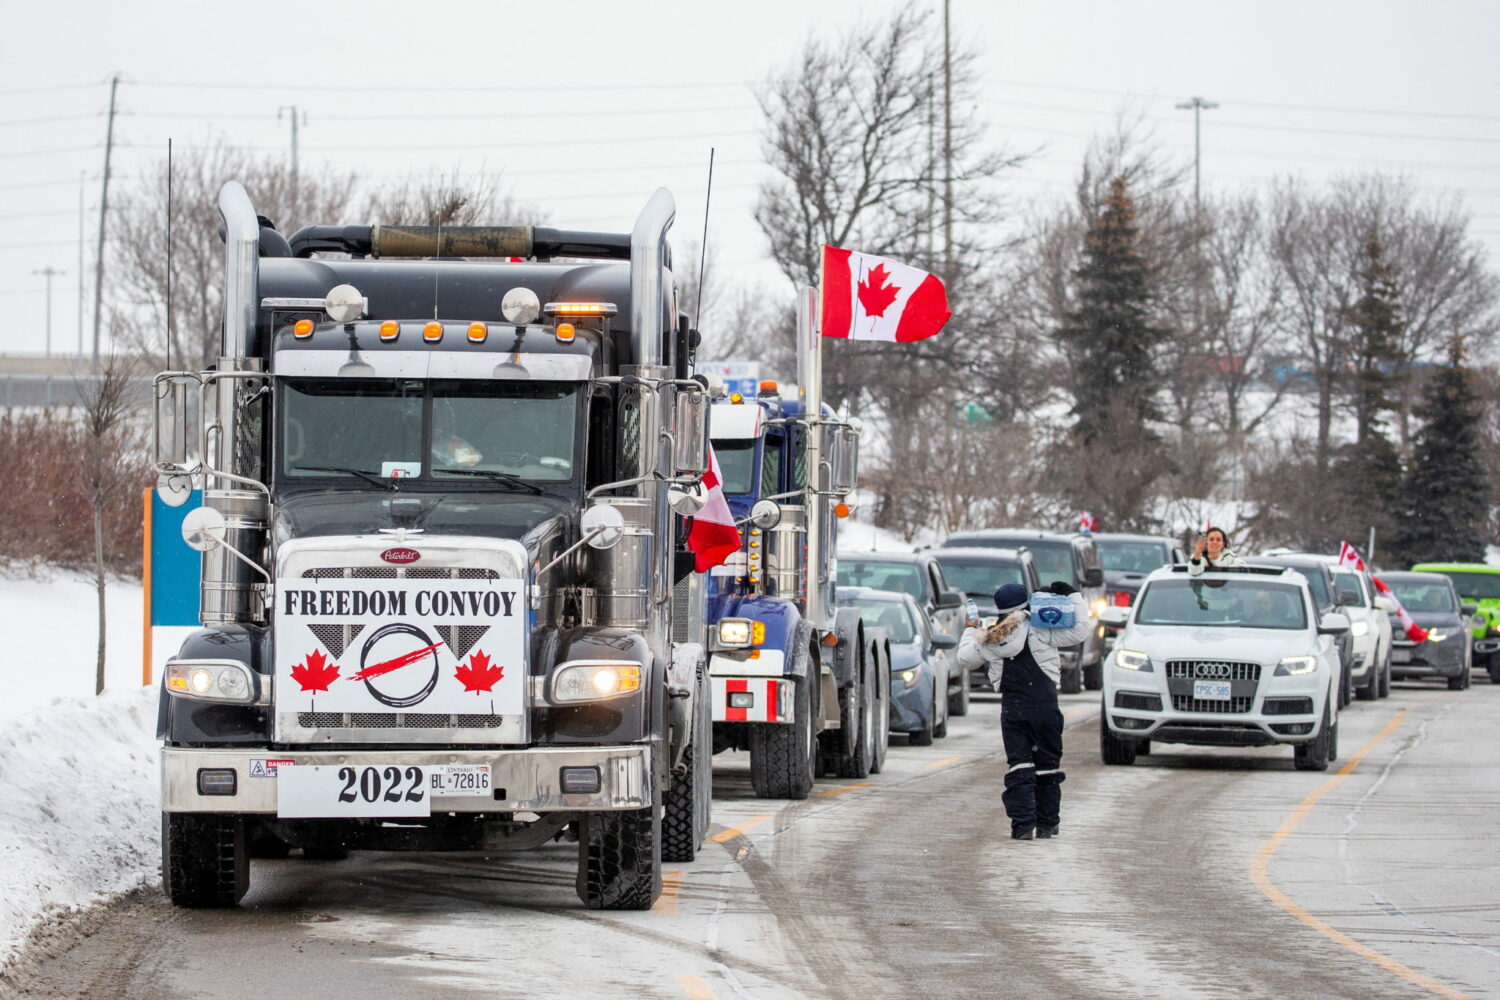 Καναδάς: Σε απόγνωση από τον θόρυβο, οι κάτοικοι της Οτάβας ζητούν να ξαναγίνει η πόλη τους... βαρετή